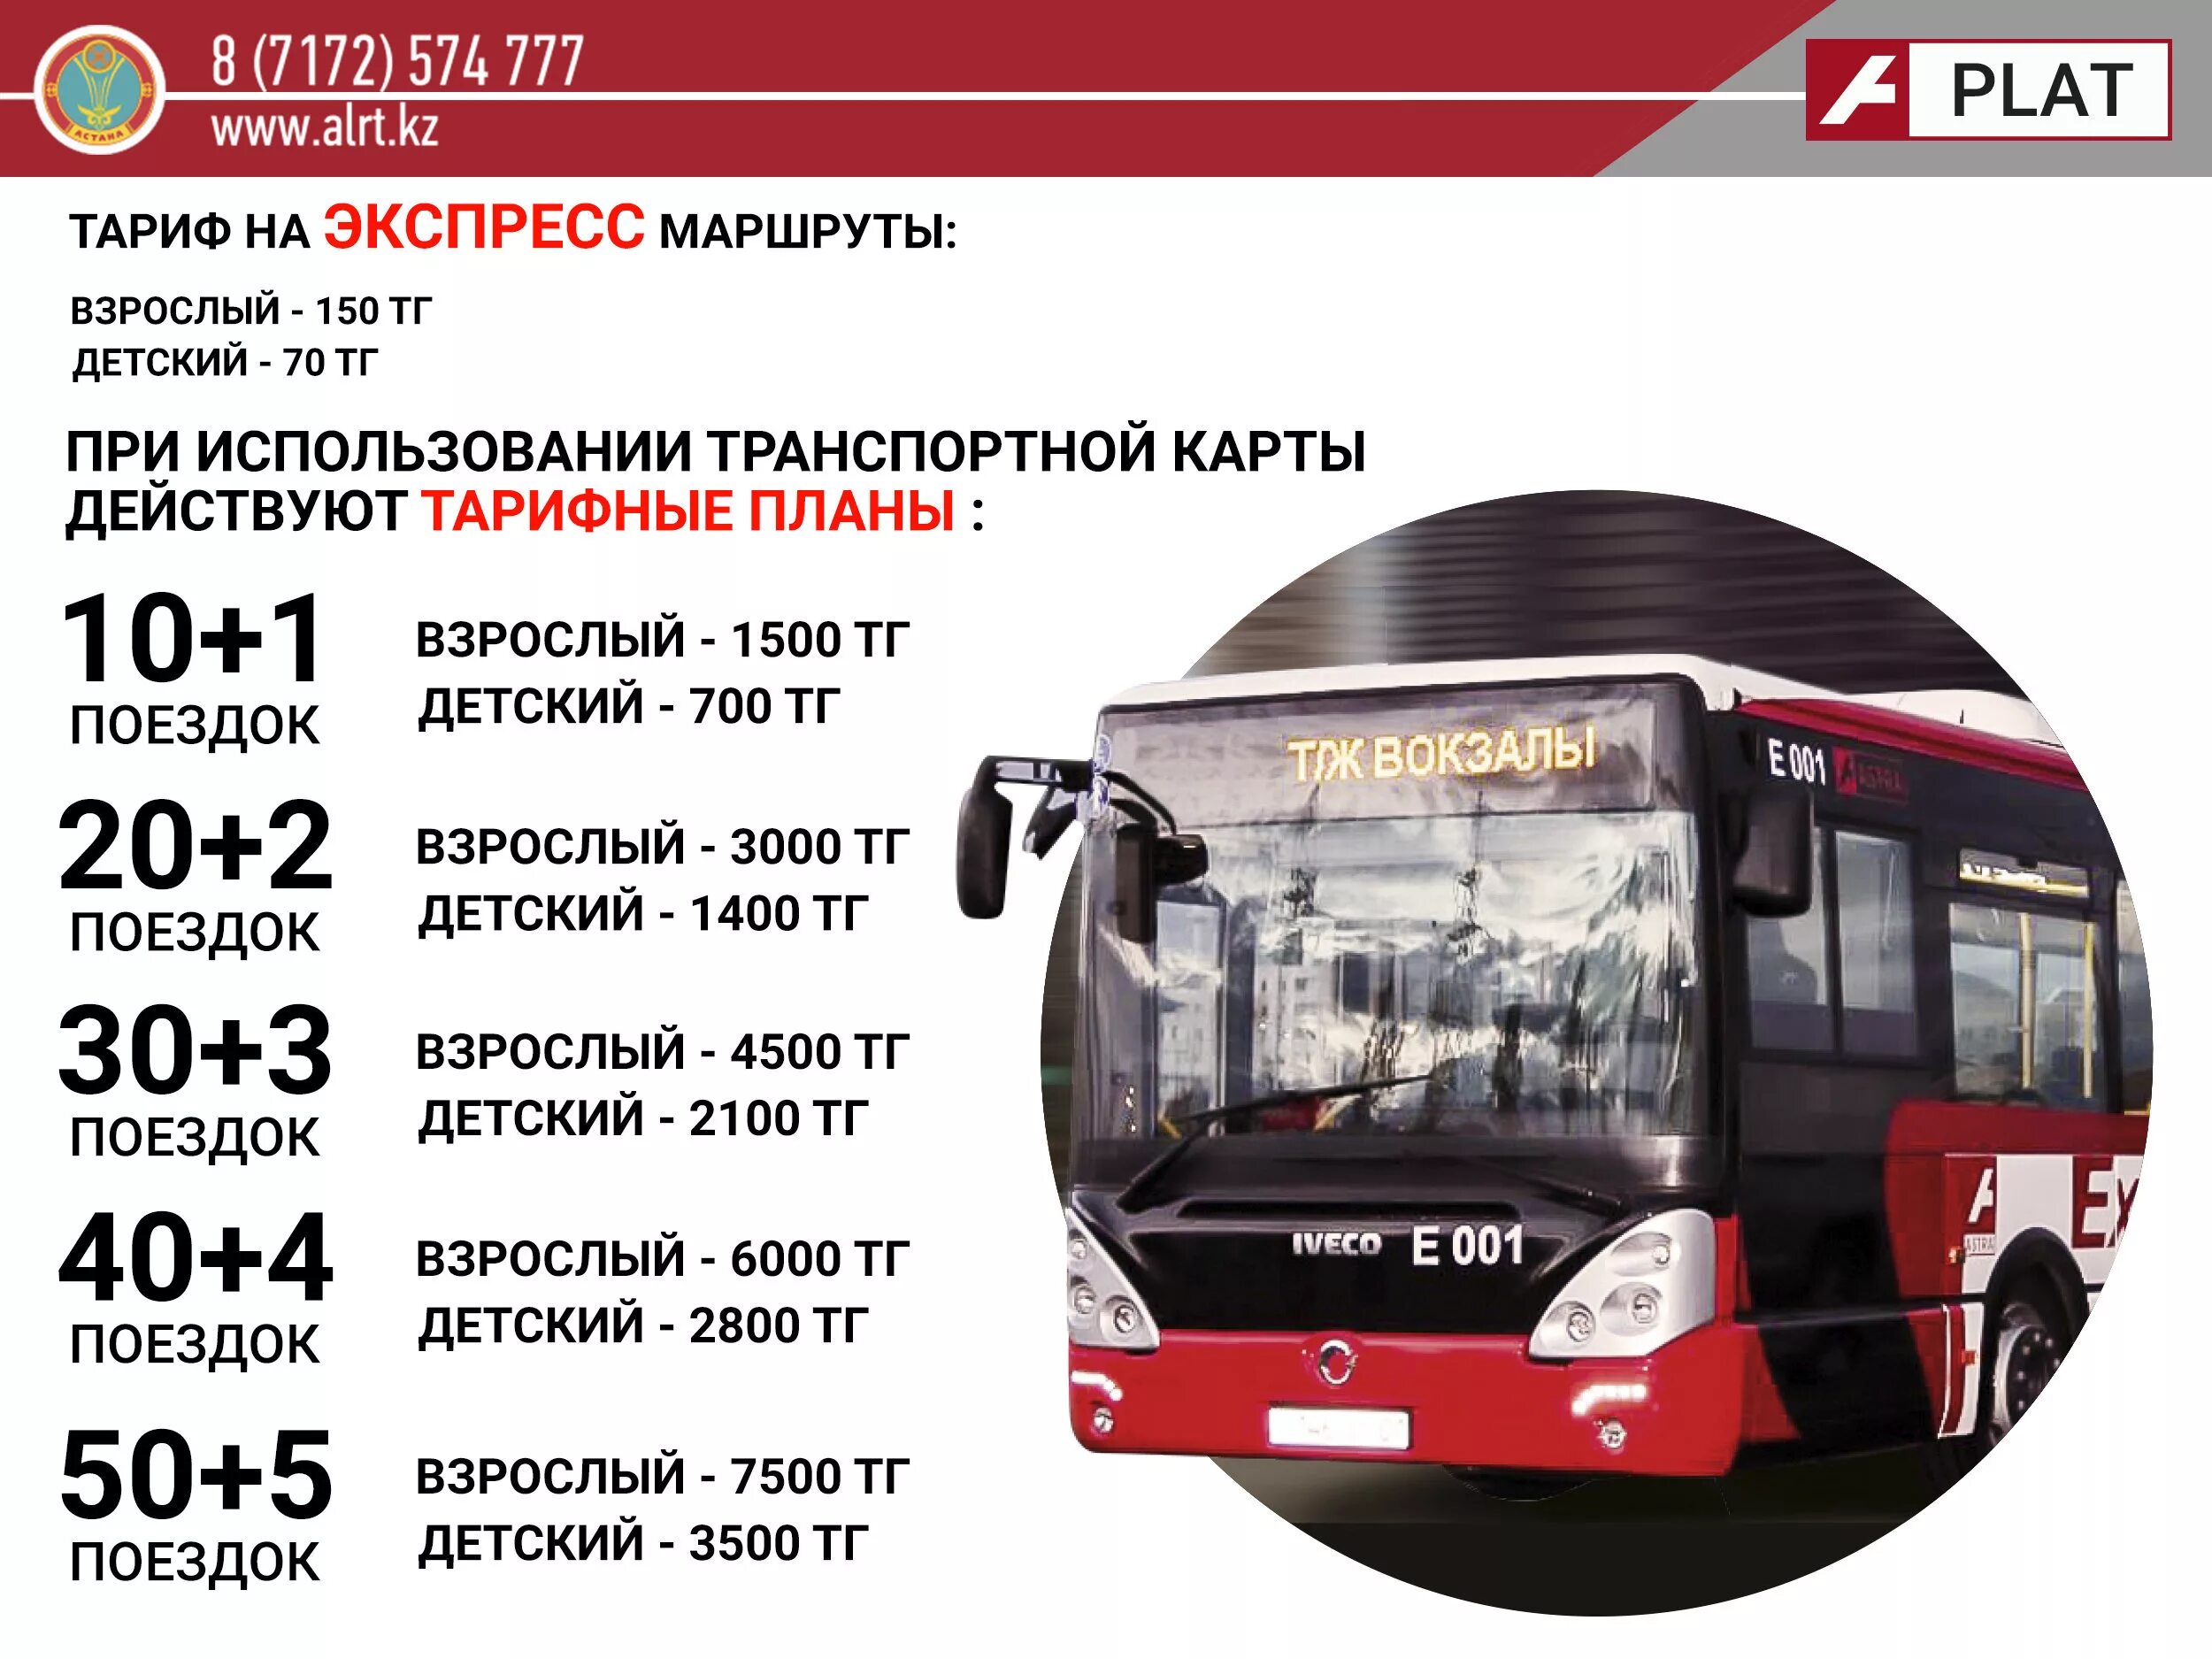 Экспресс автобус. Автобусы Астана экспресс. Экспресс маршрут. Транспортная карта Астана. Проезд автобусом астана